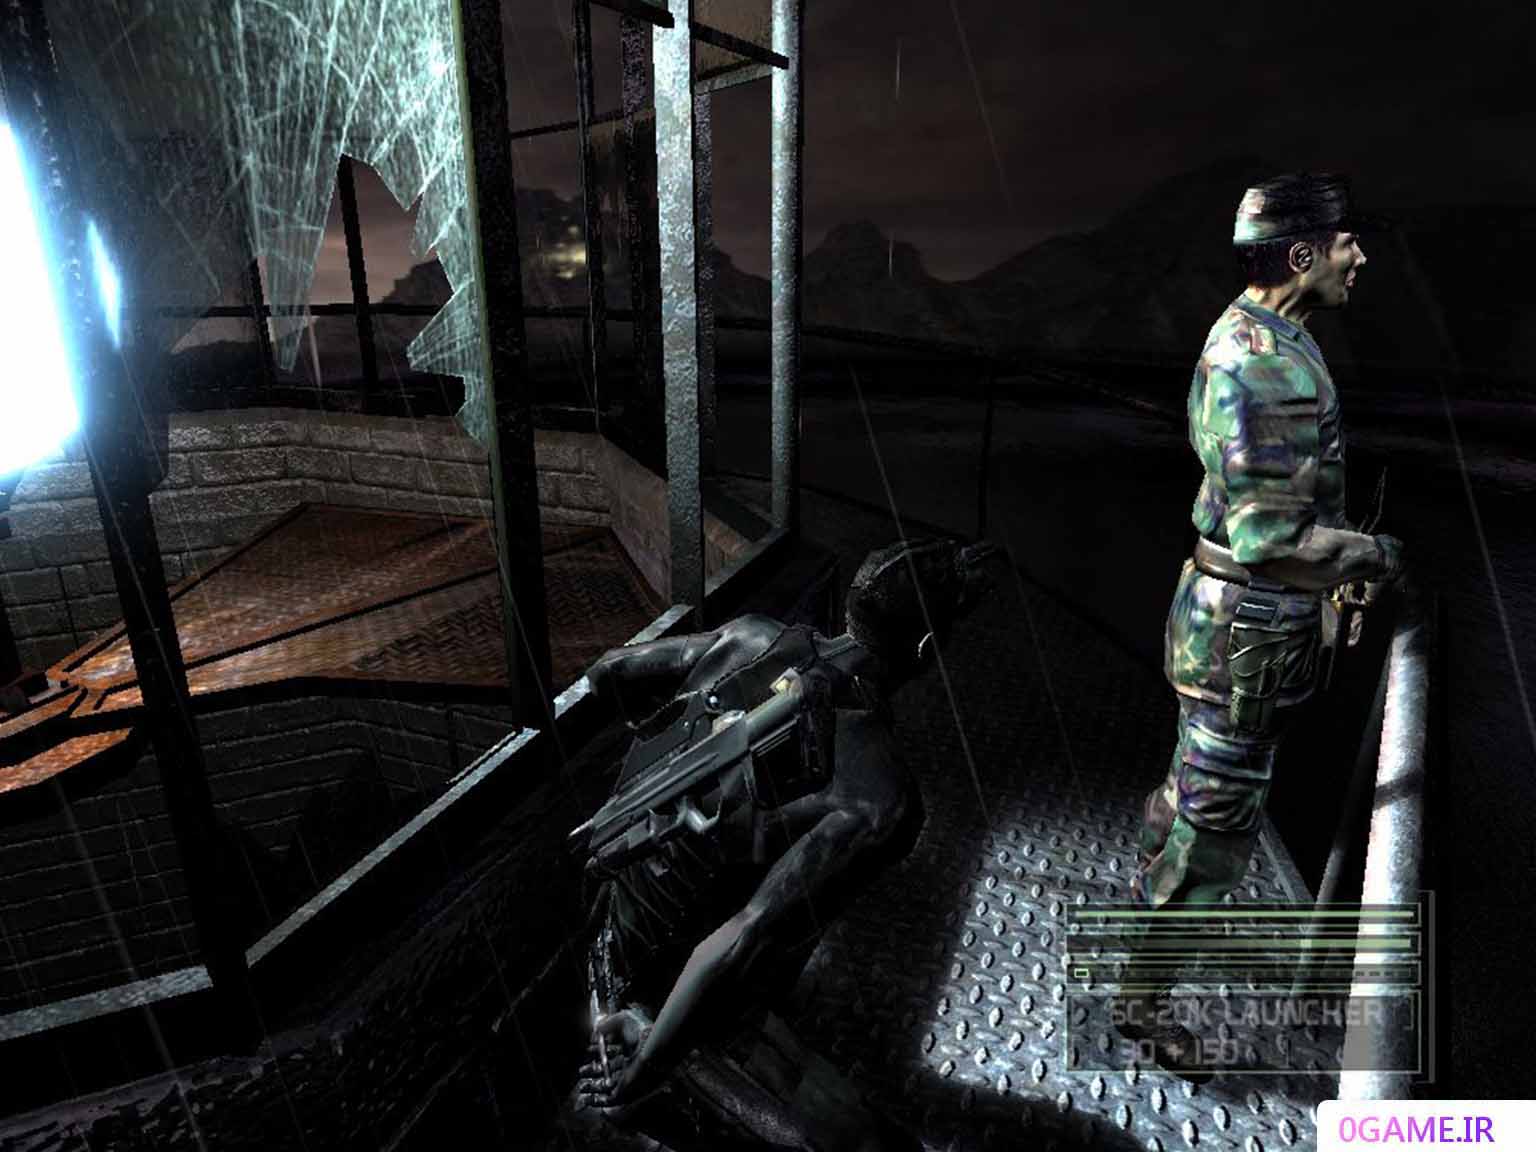 دانلود بازی اسپلینتر سل 3 (Tom Clancy's Splinter Cell) نسخه کامل برای کامپیوتر